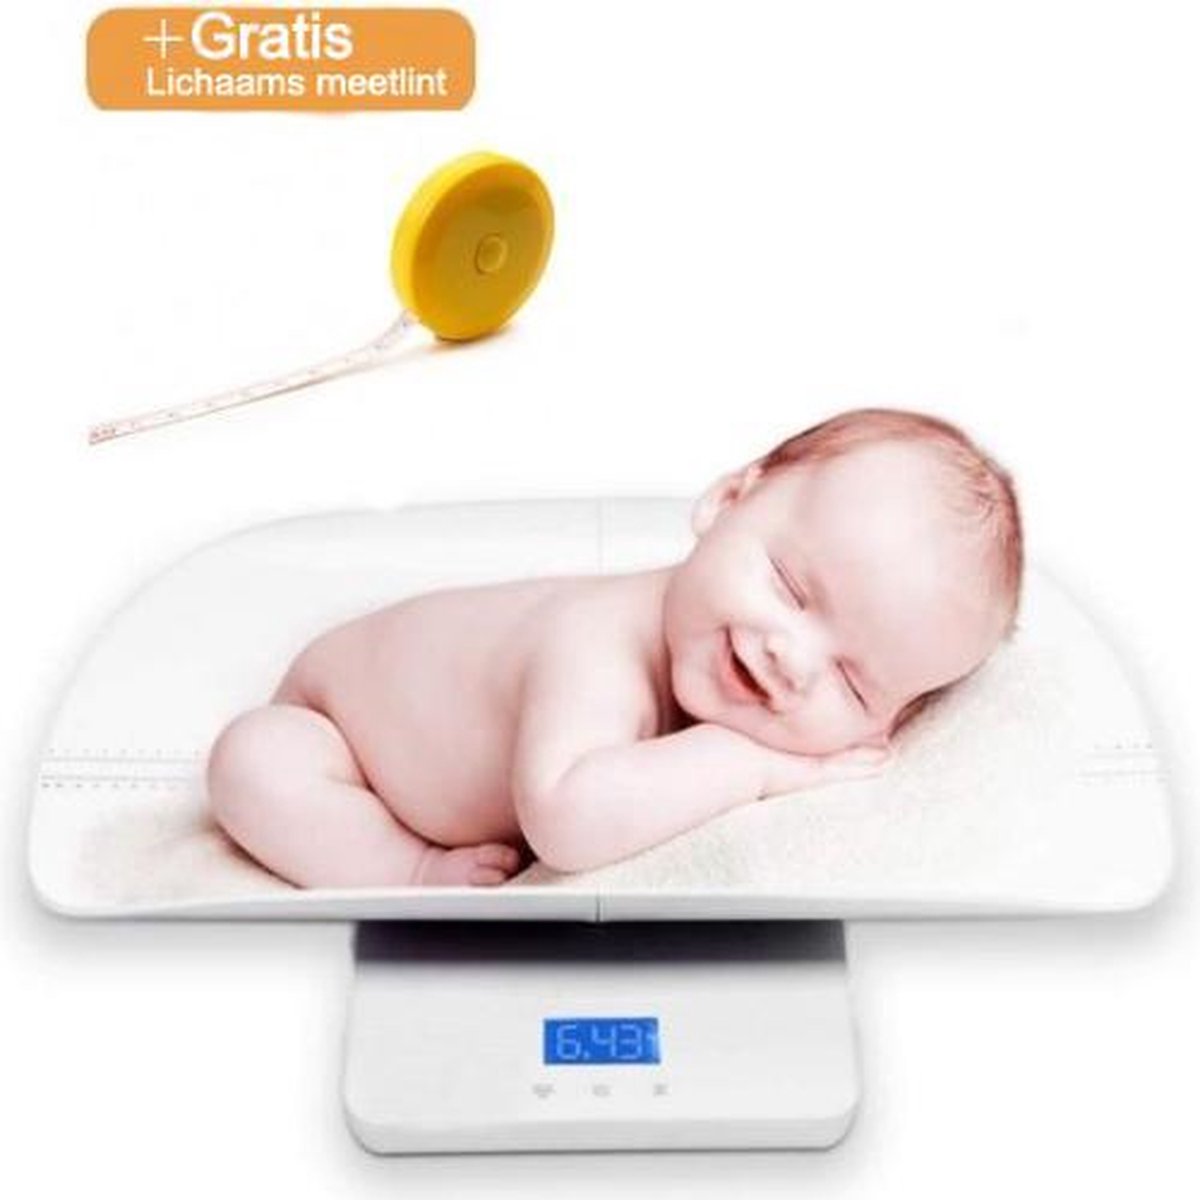 Digitale babyweegschaal met gratis lichaamsrolmaat - personenweegschaal -  weegschaal... | bol.com